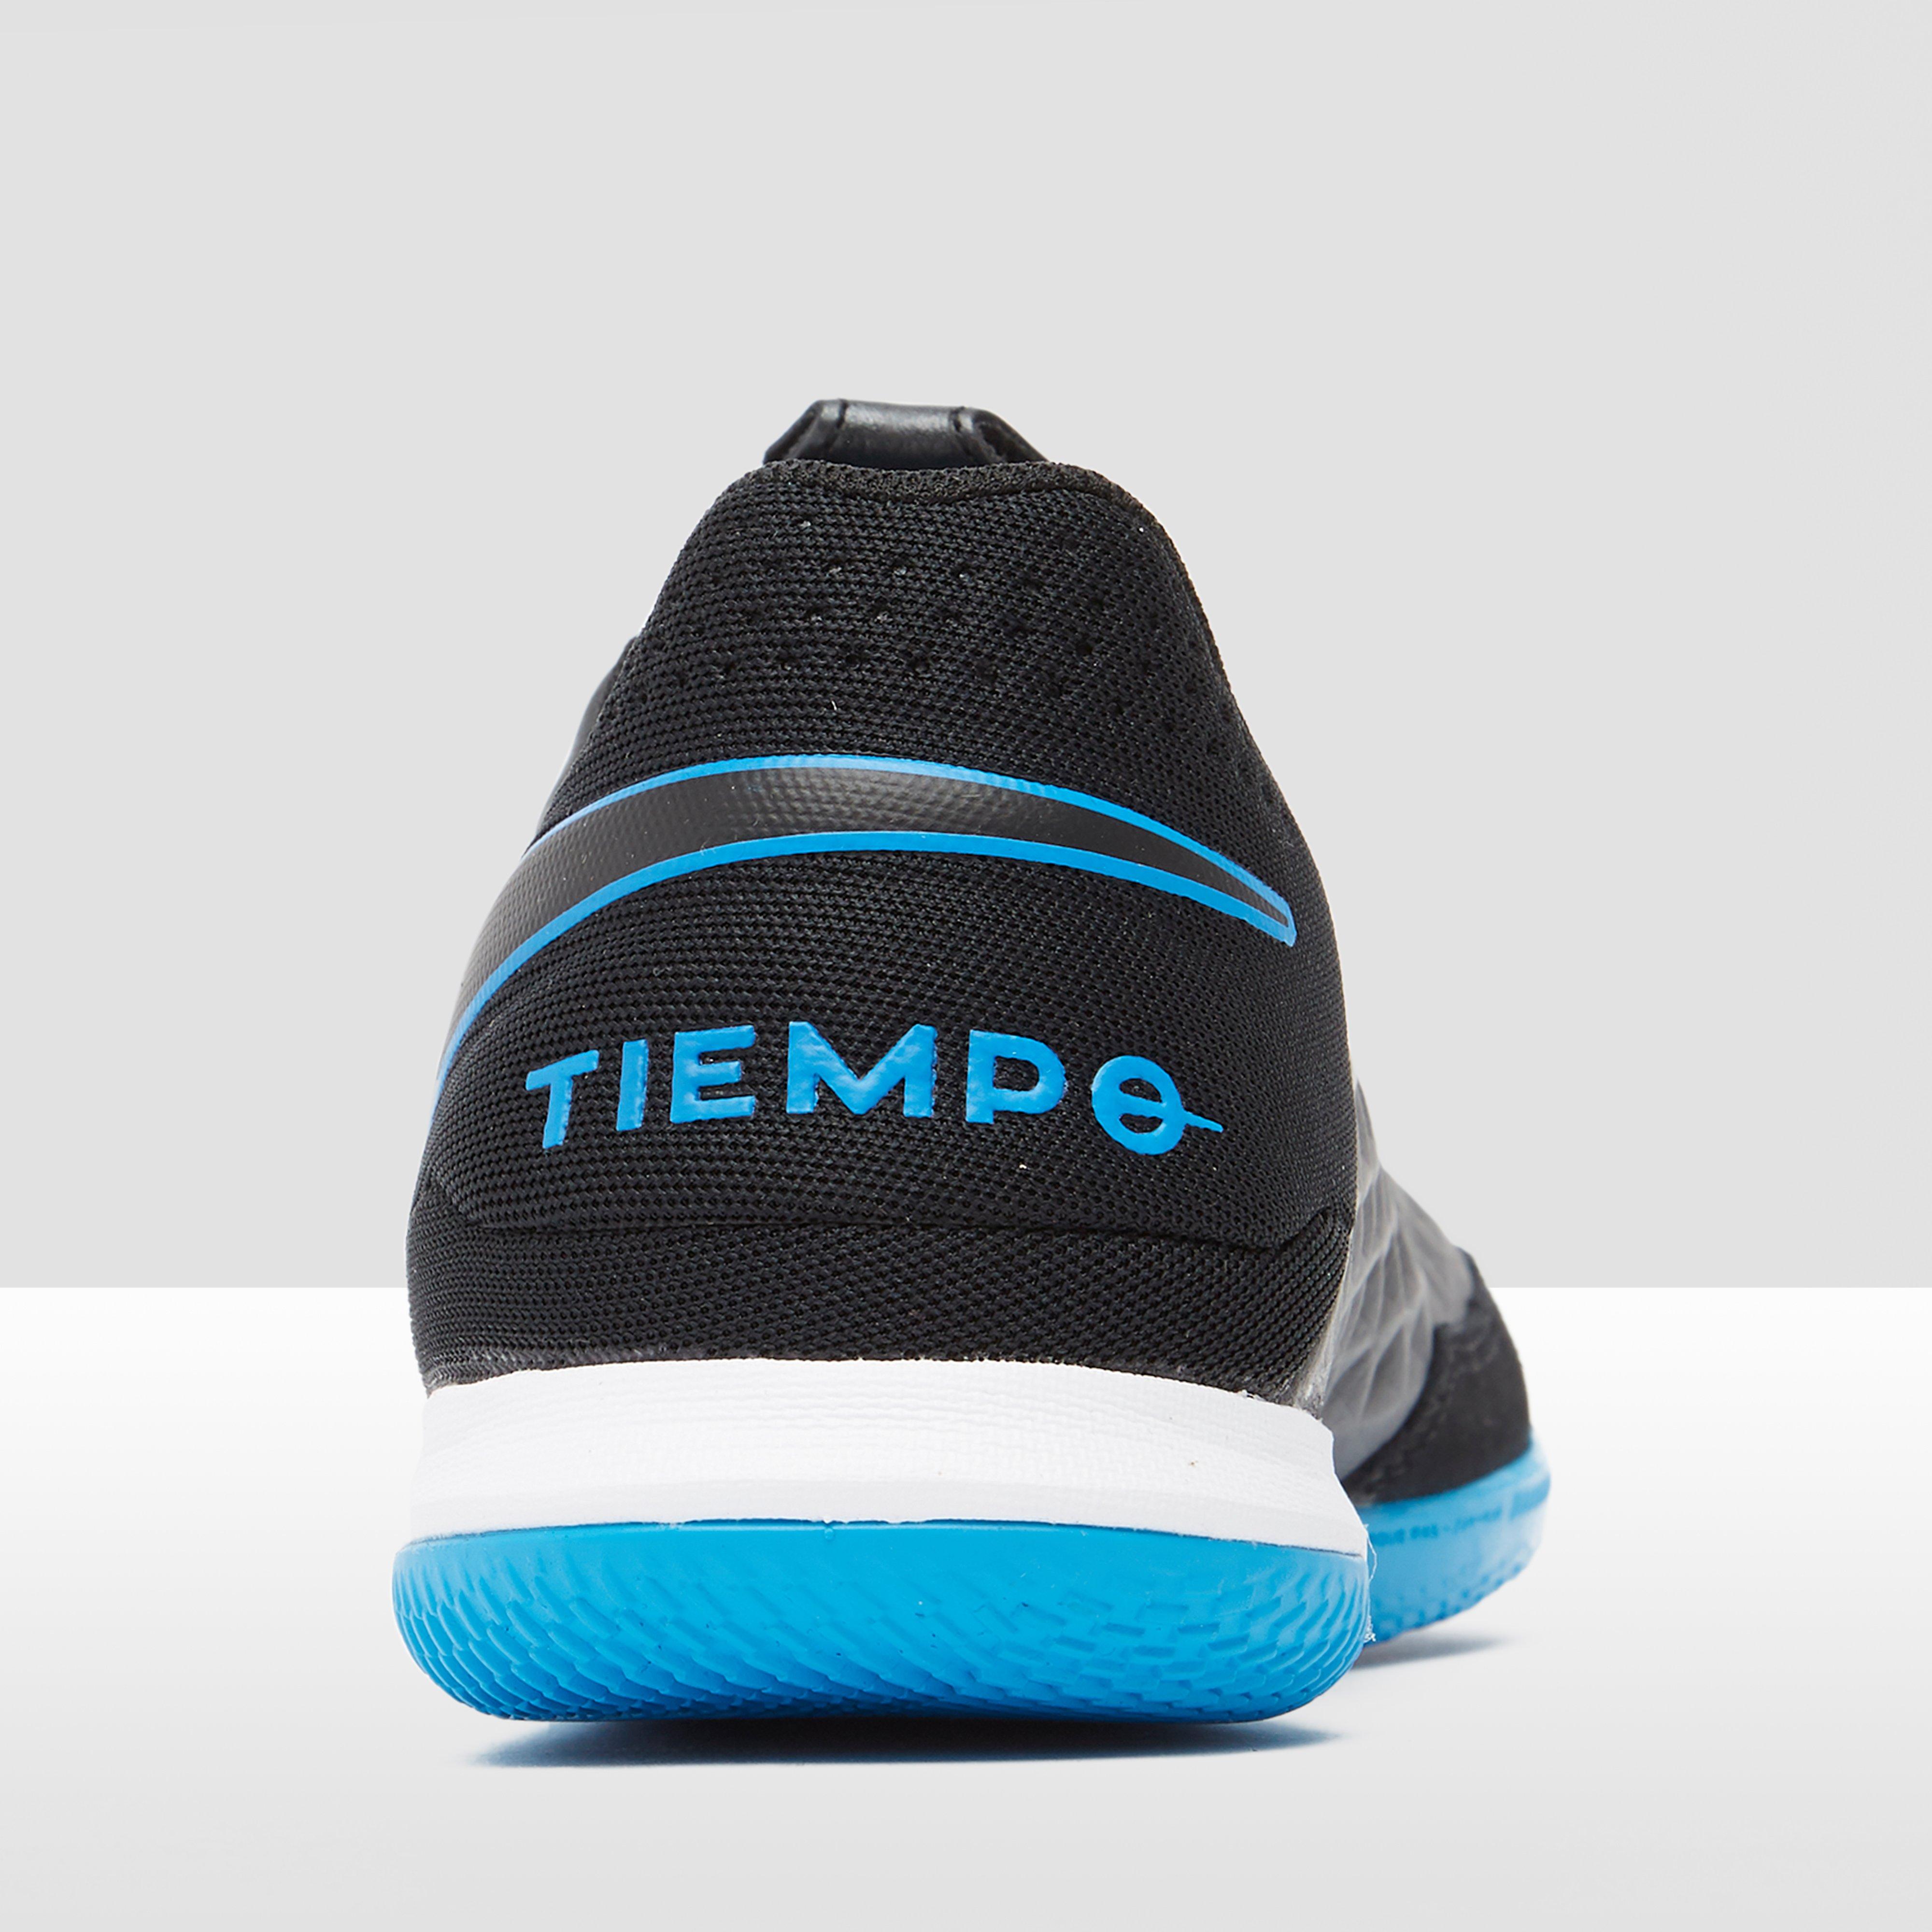 Nike launches the Tiempo Legend 8 'Dazzle. Volky. Facebook